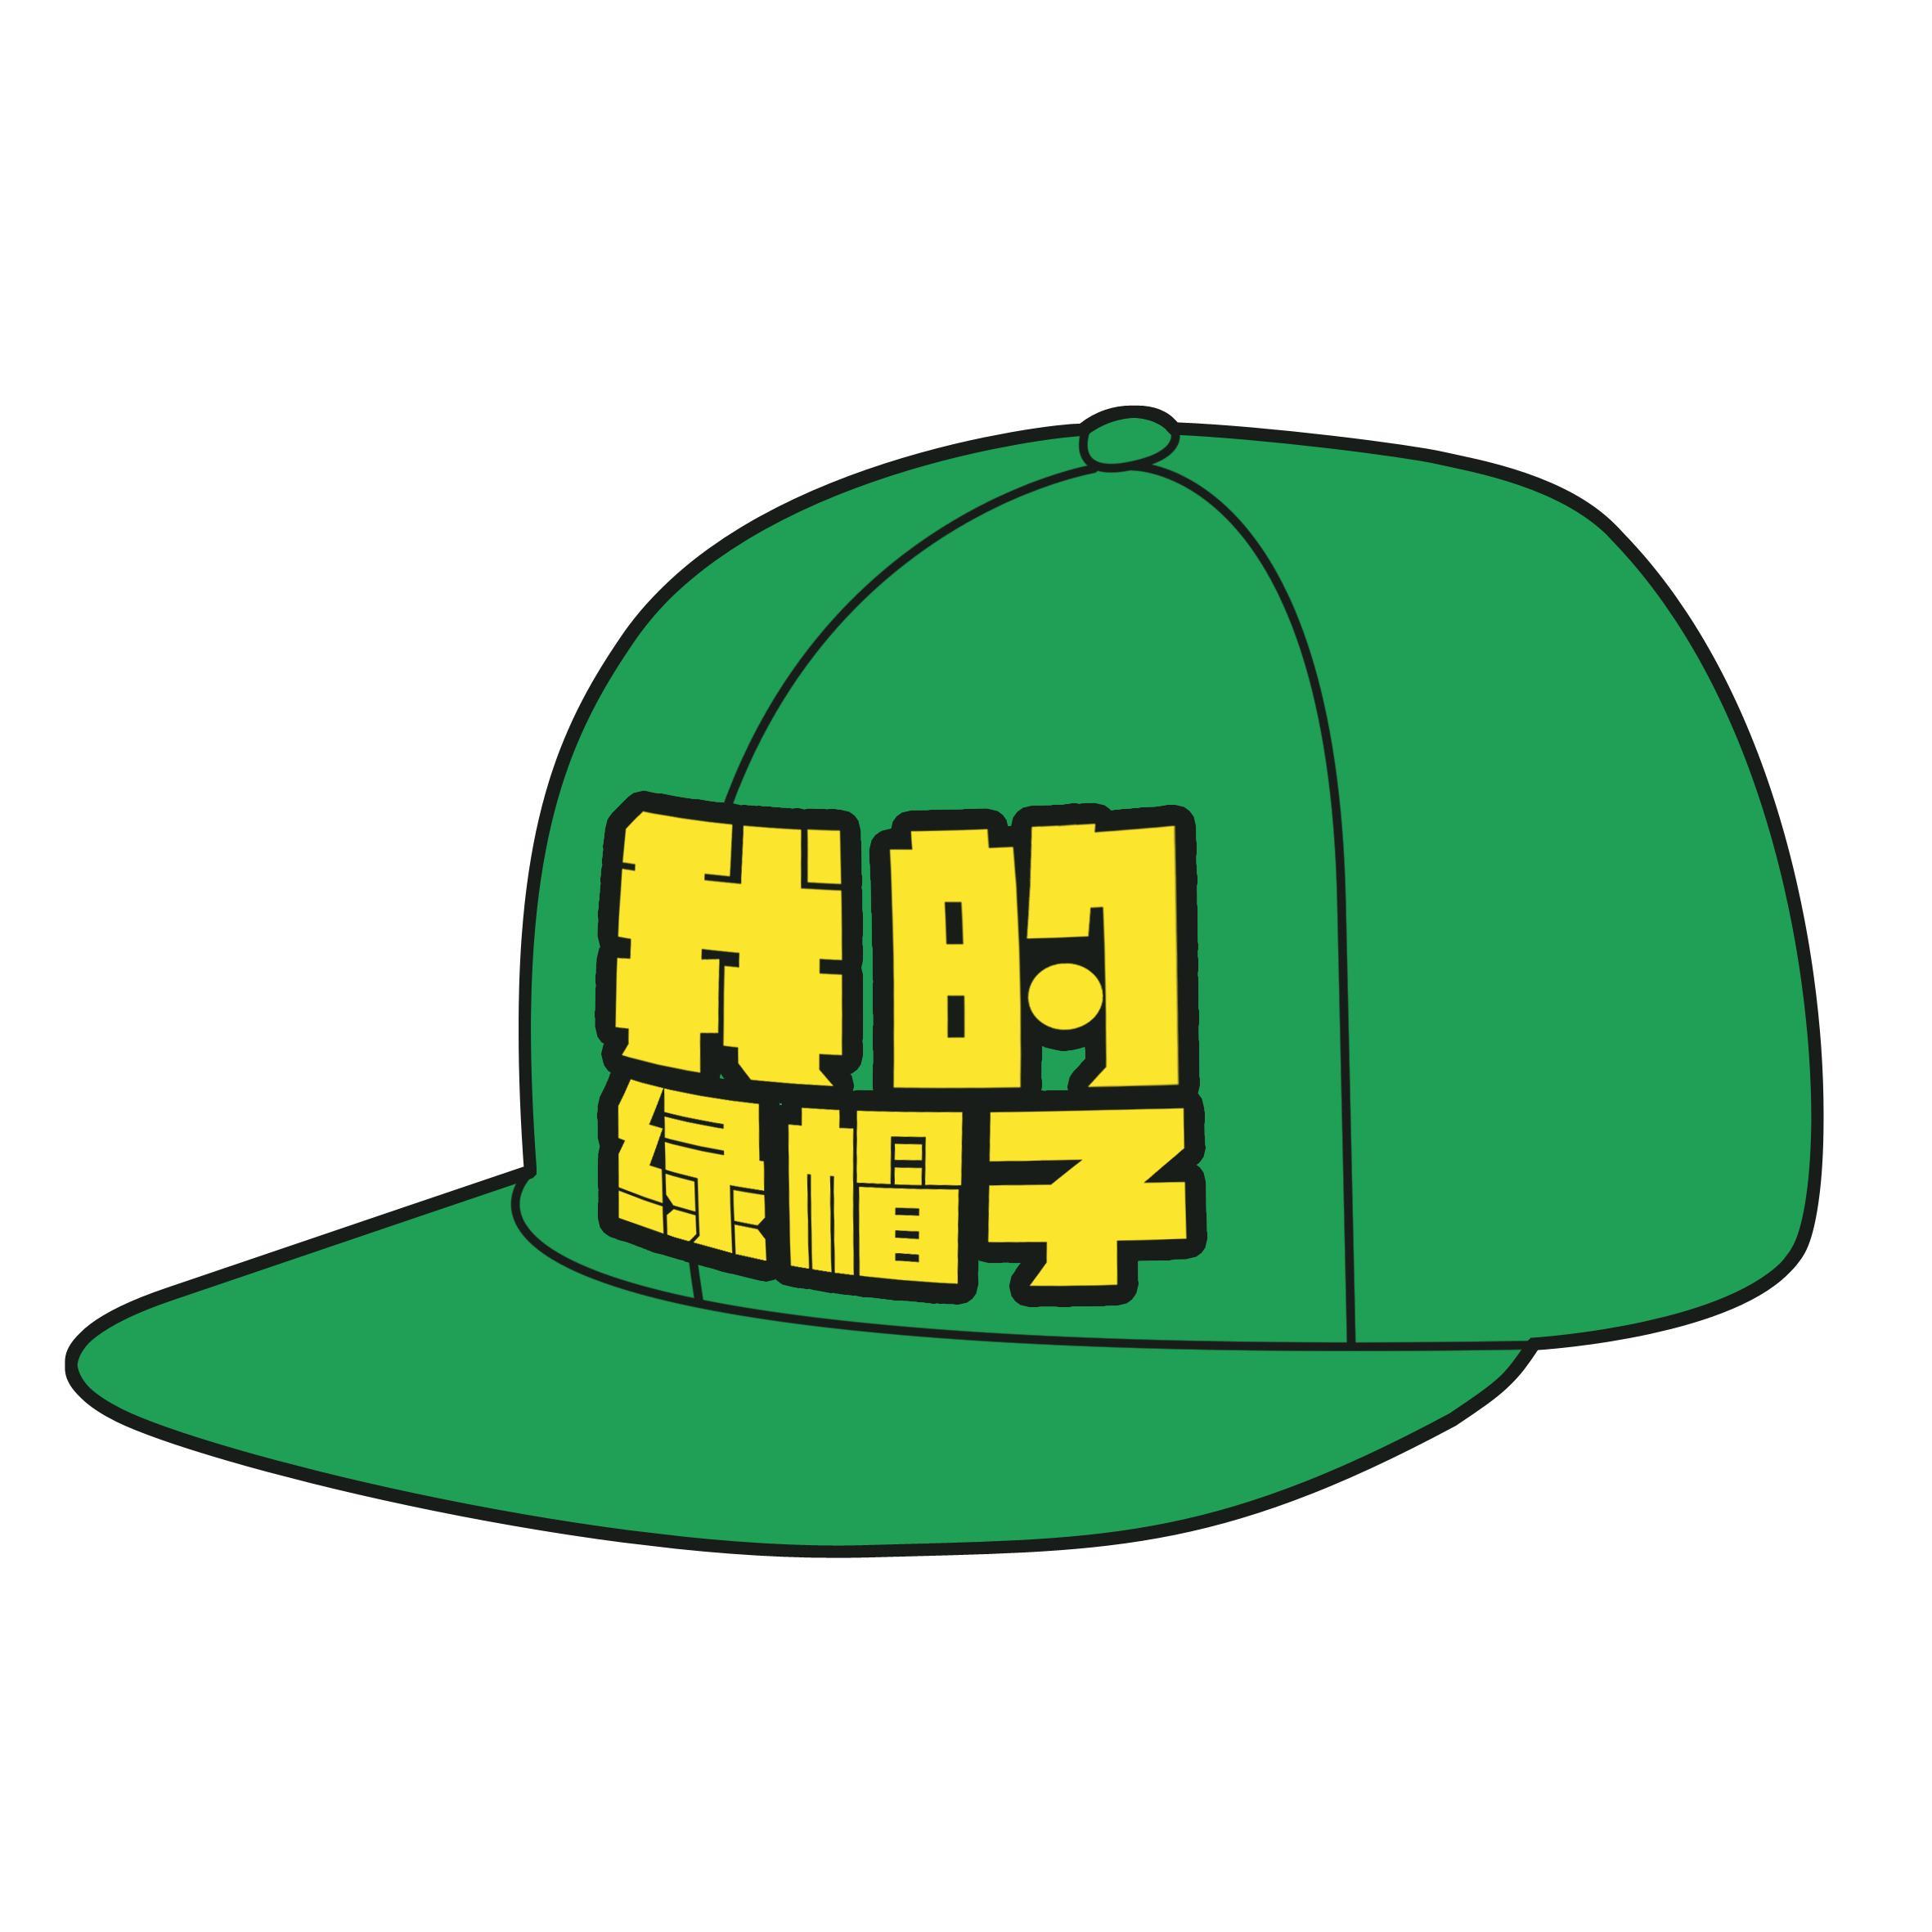 绿帽头像绿帽子图片